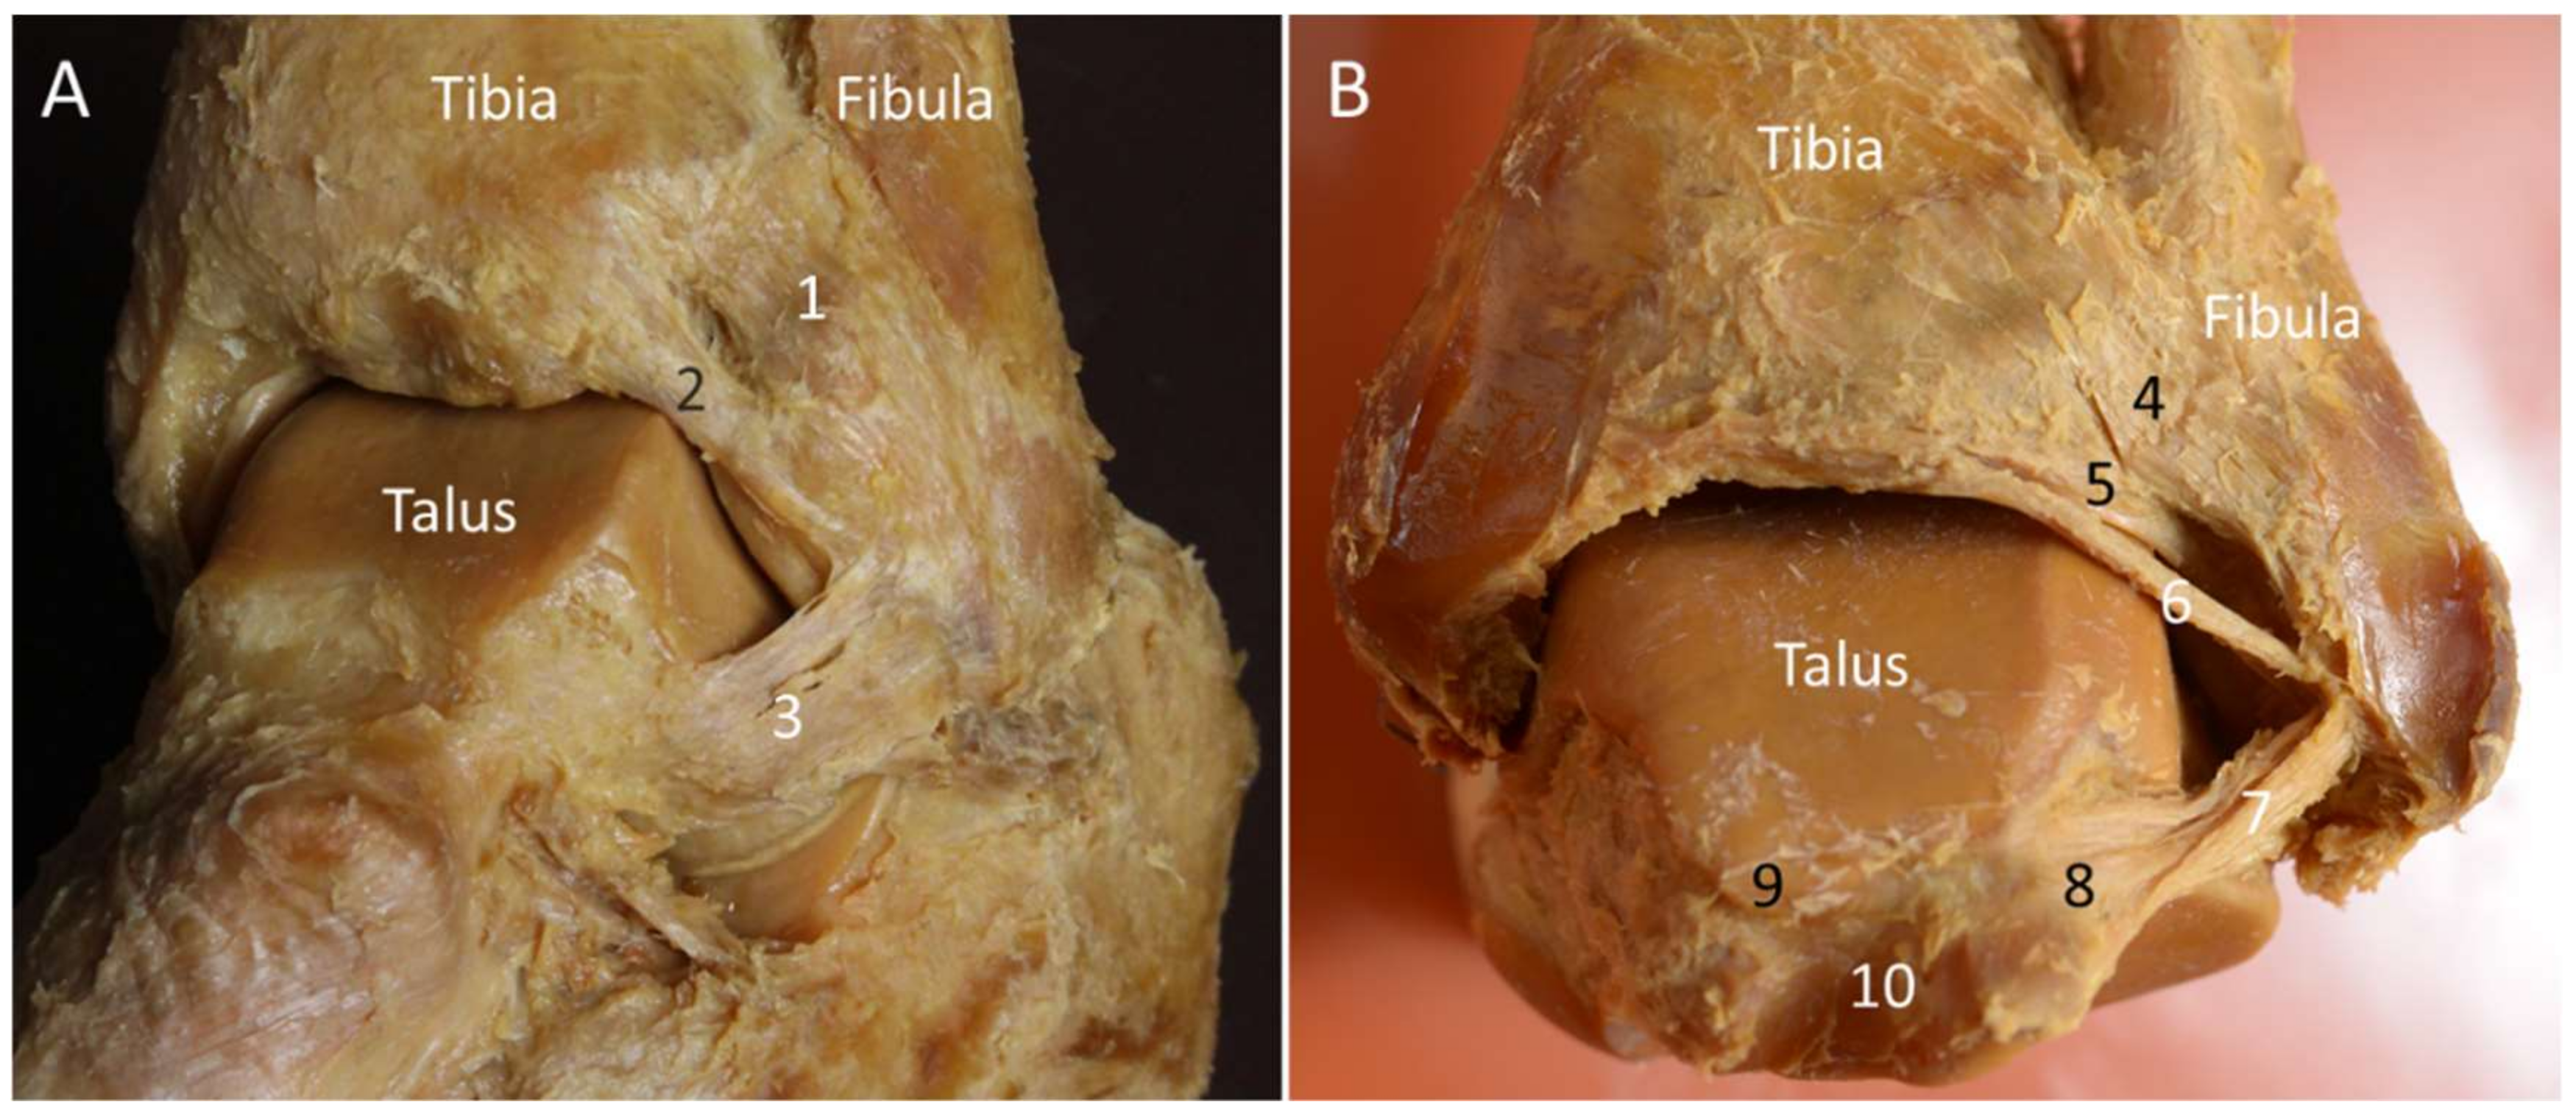 posterior tibiotalar ligament